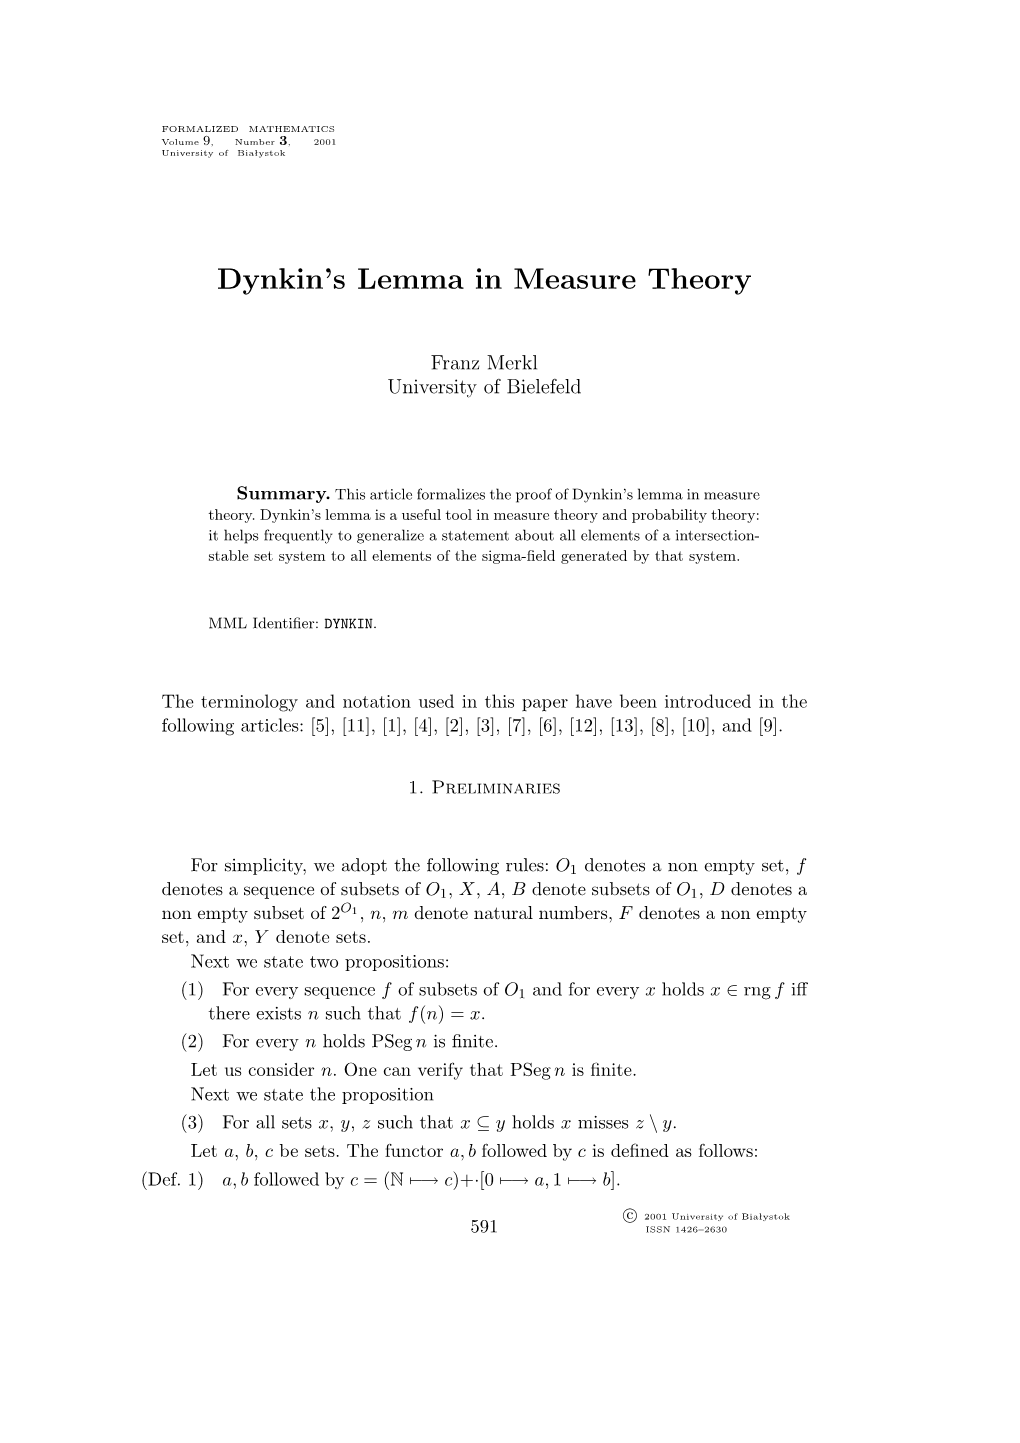 Dynkin's Lemma in Measure Theory